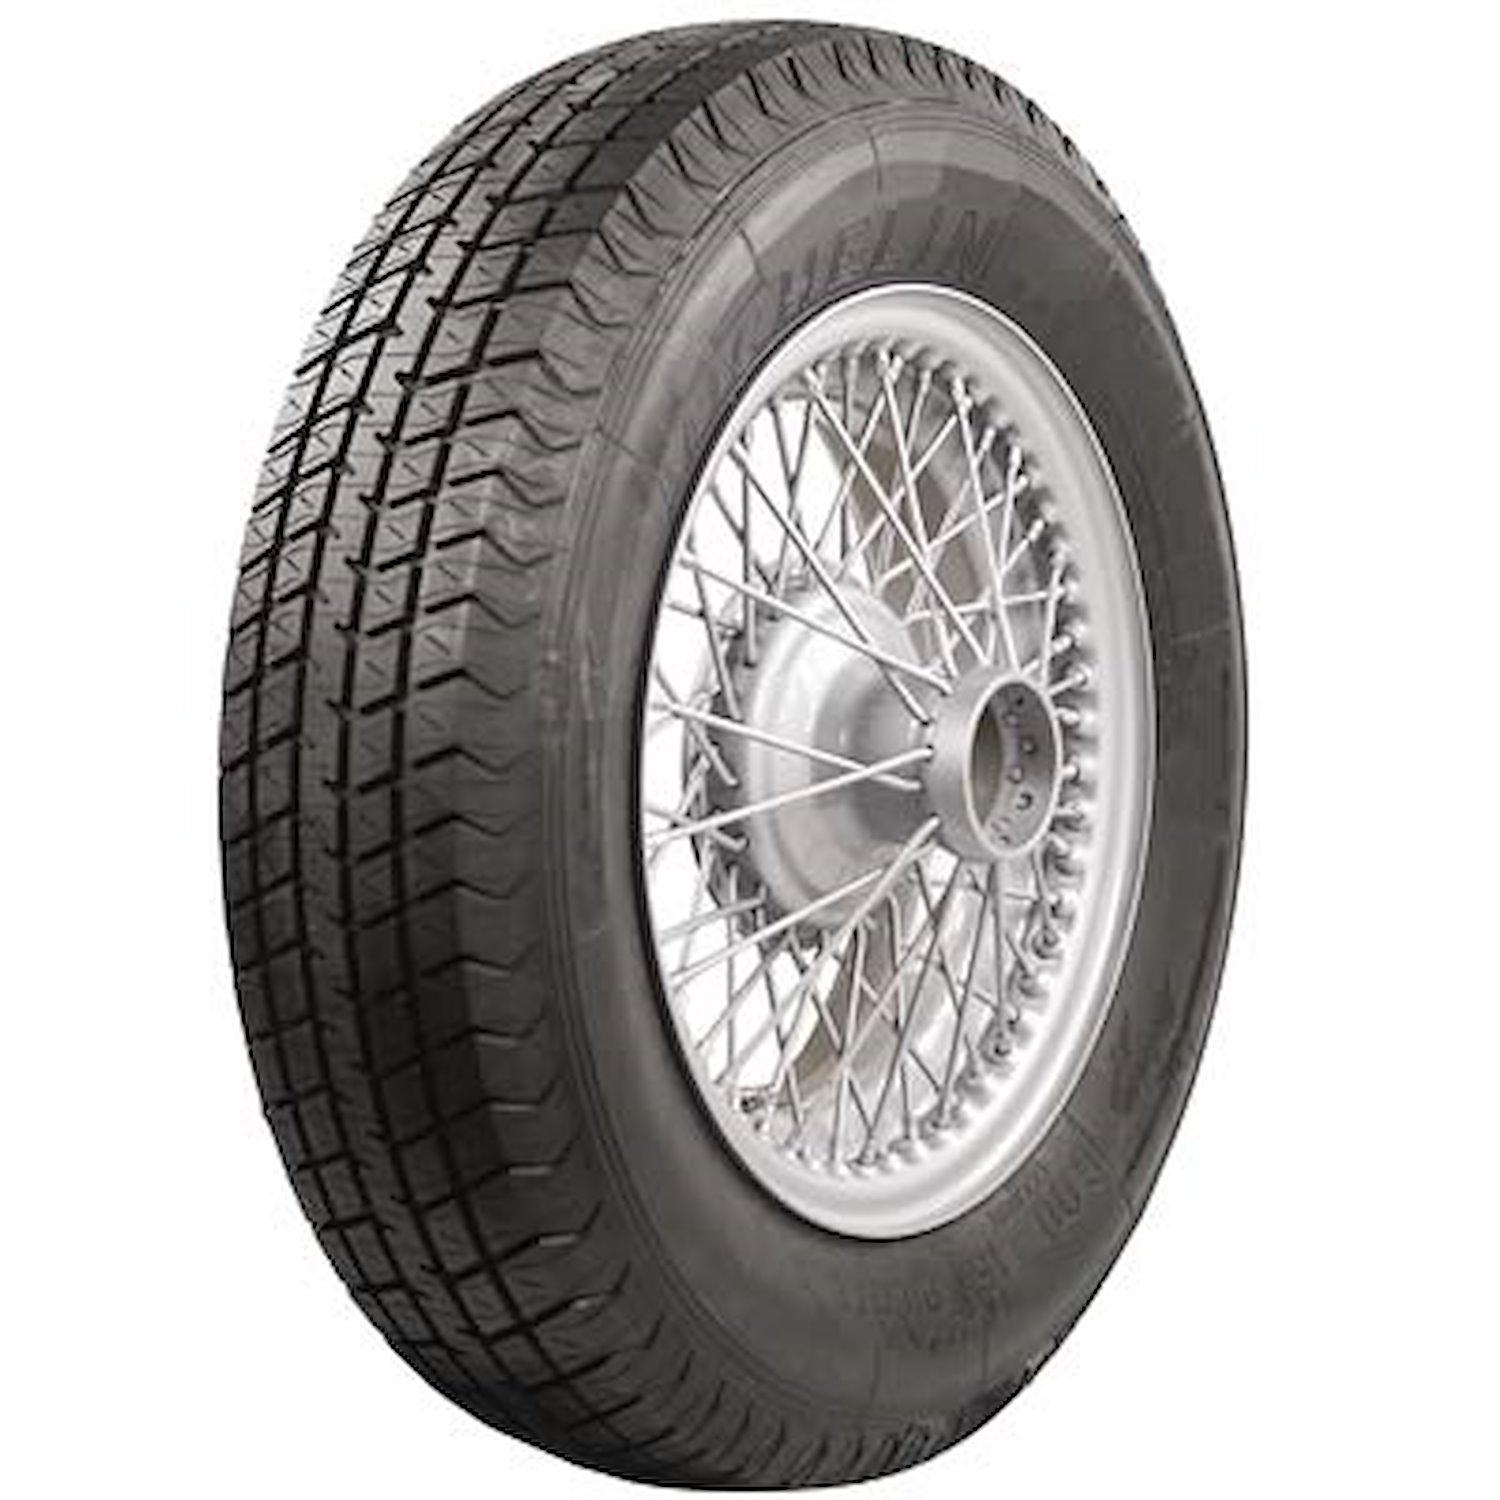 66241 Tire, Michelin, Pilote X, 600R16 88W